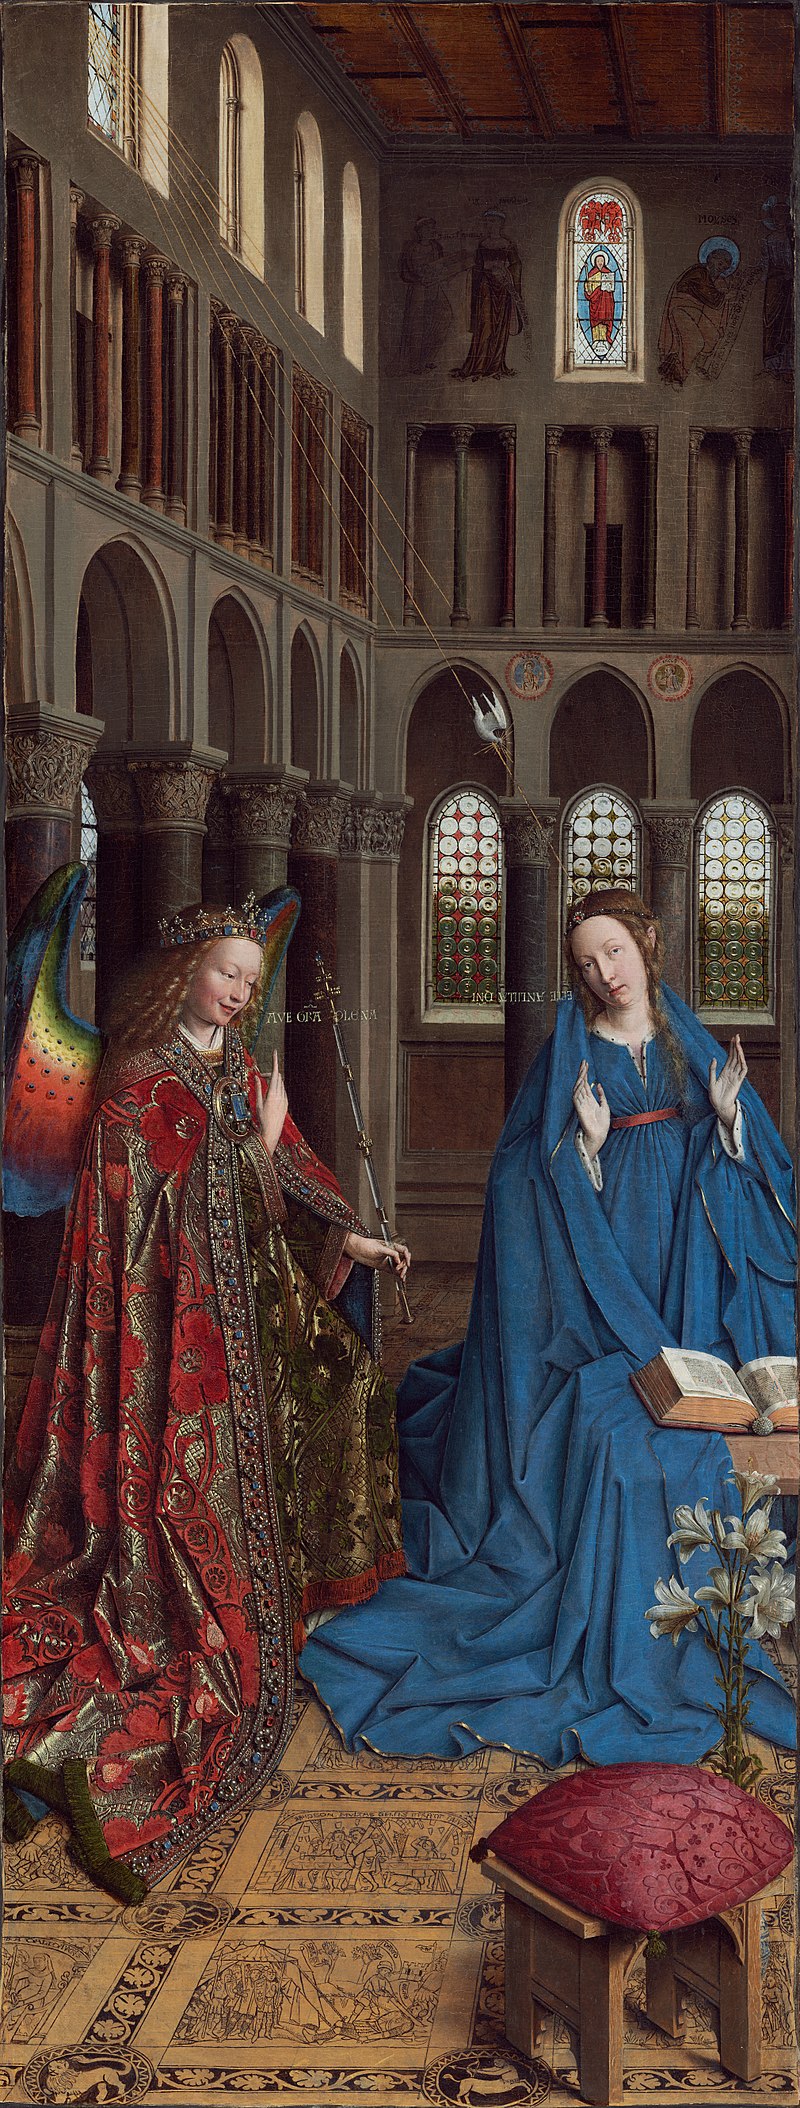 La Anunciación by Jan van Eyck - c. 1434 - 93 x 37 cm National Gallery of Art